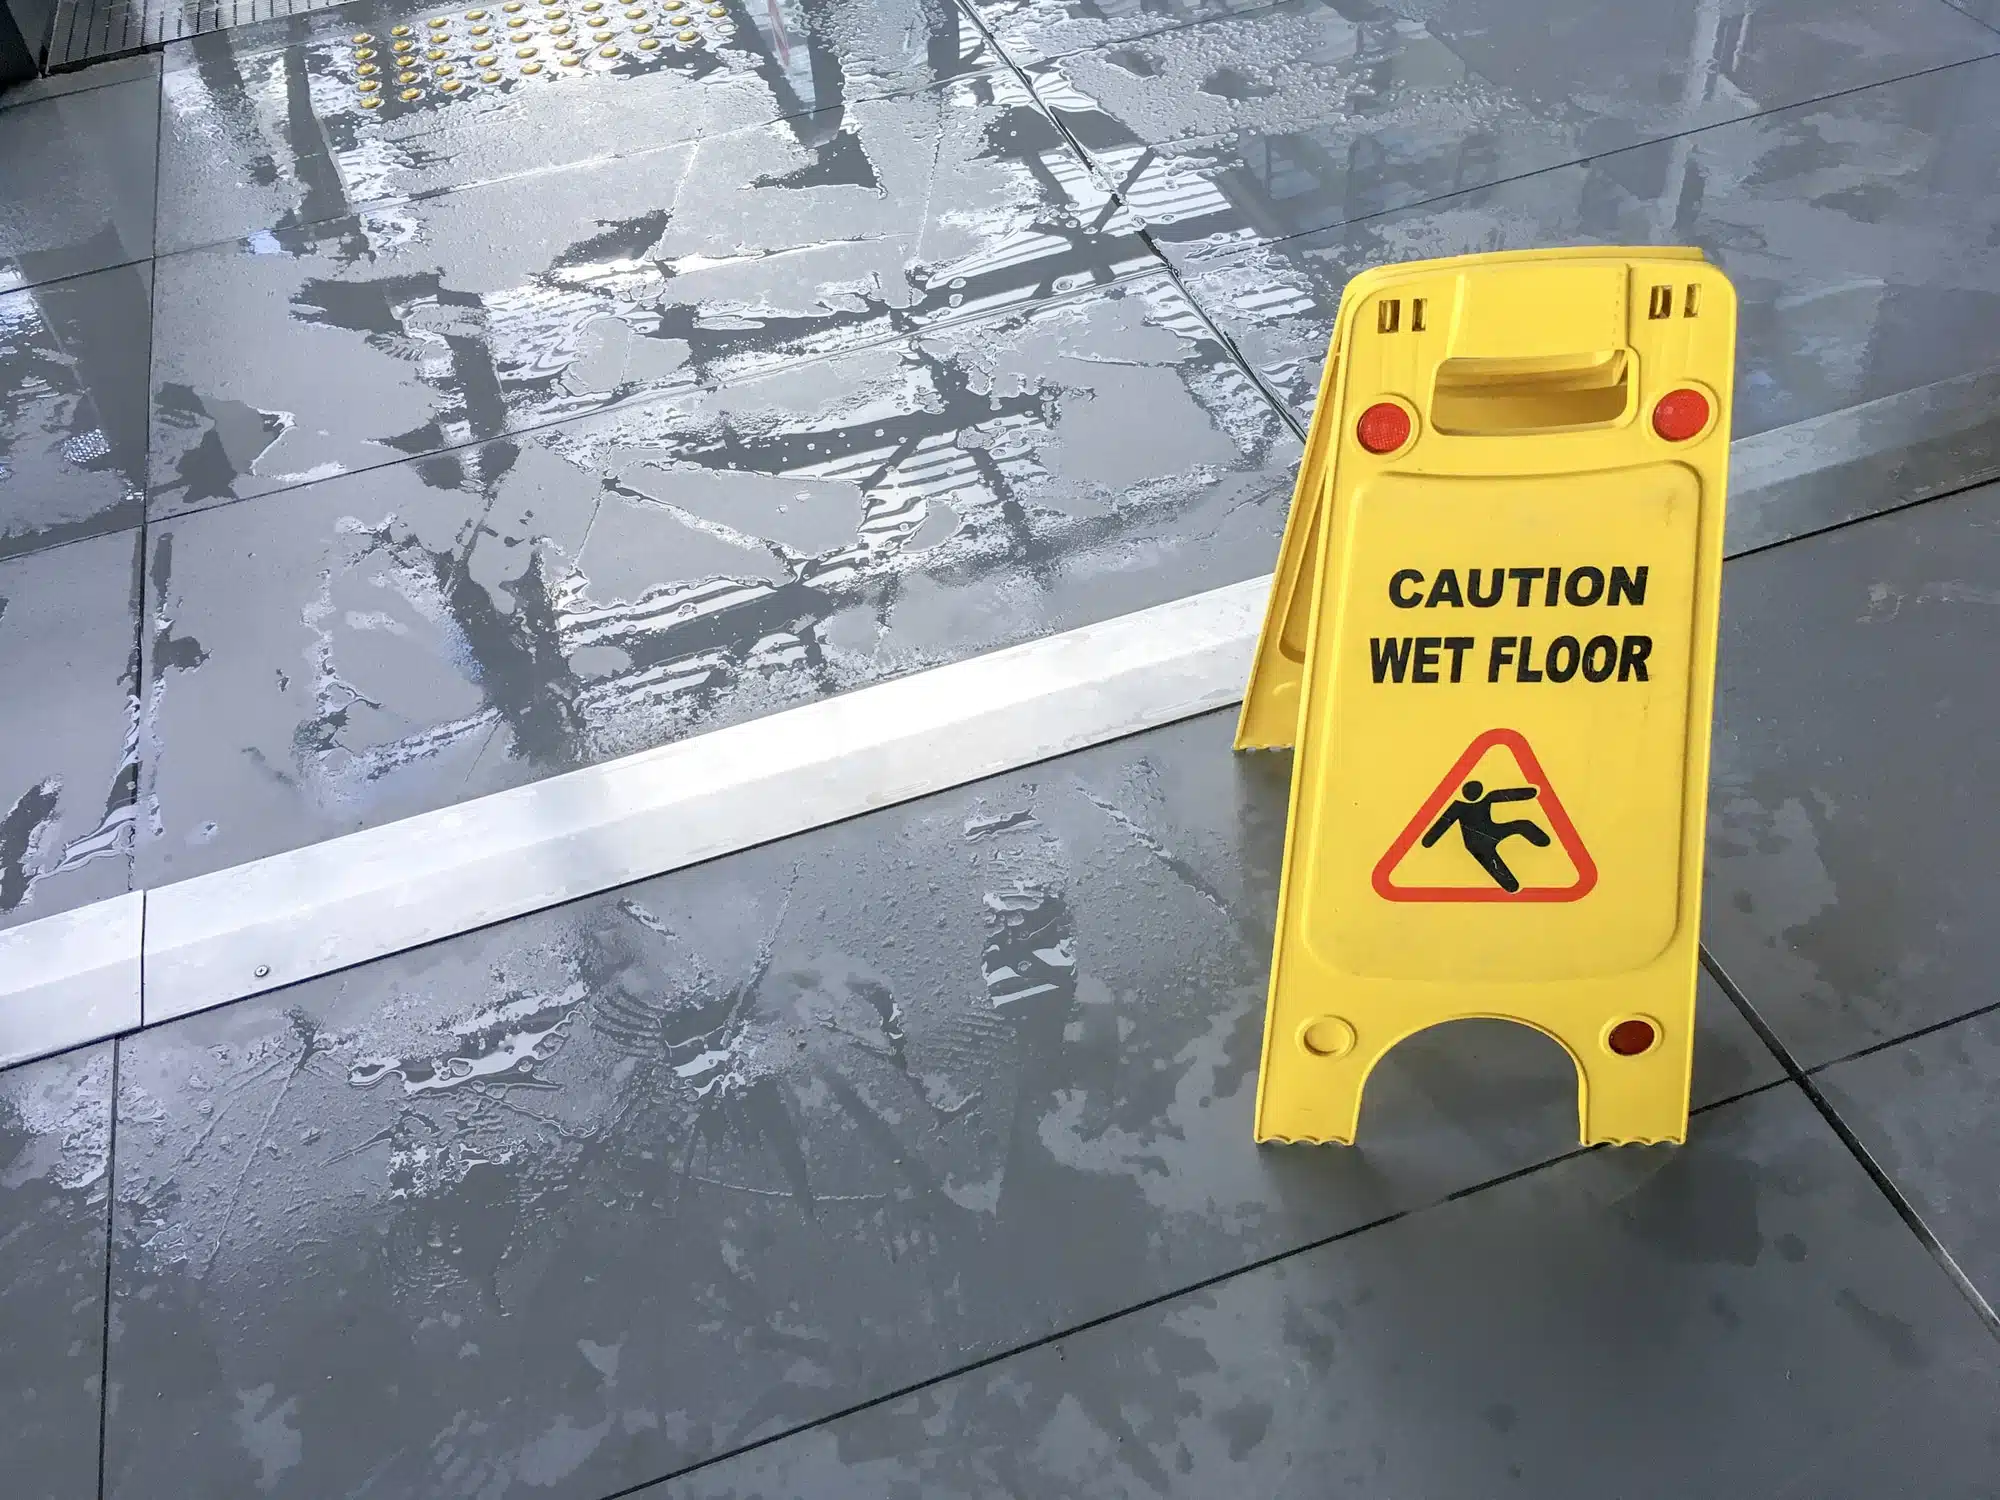 Wet floor sign on slippery floor